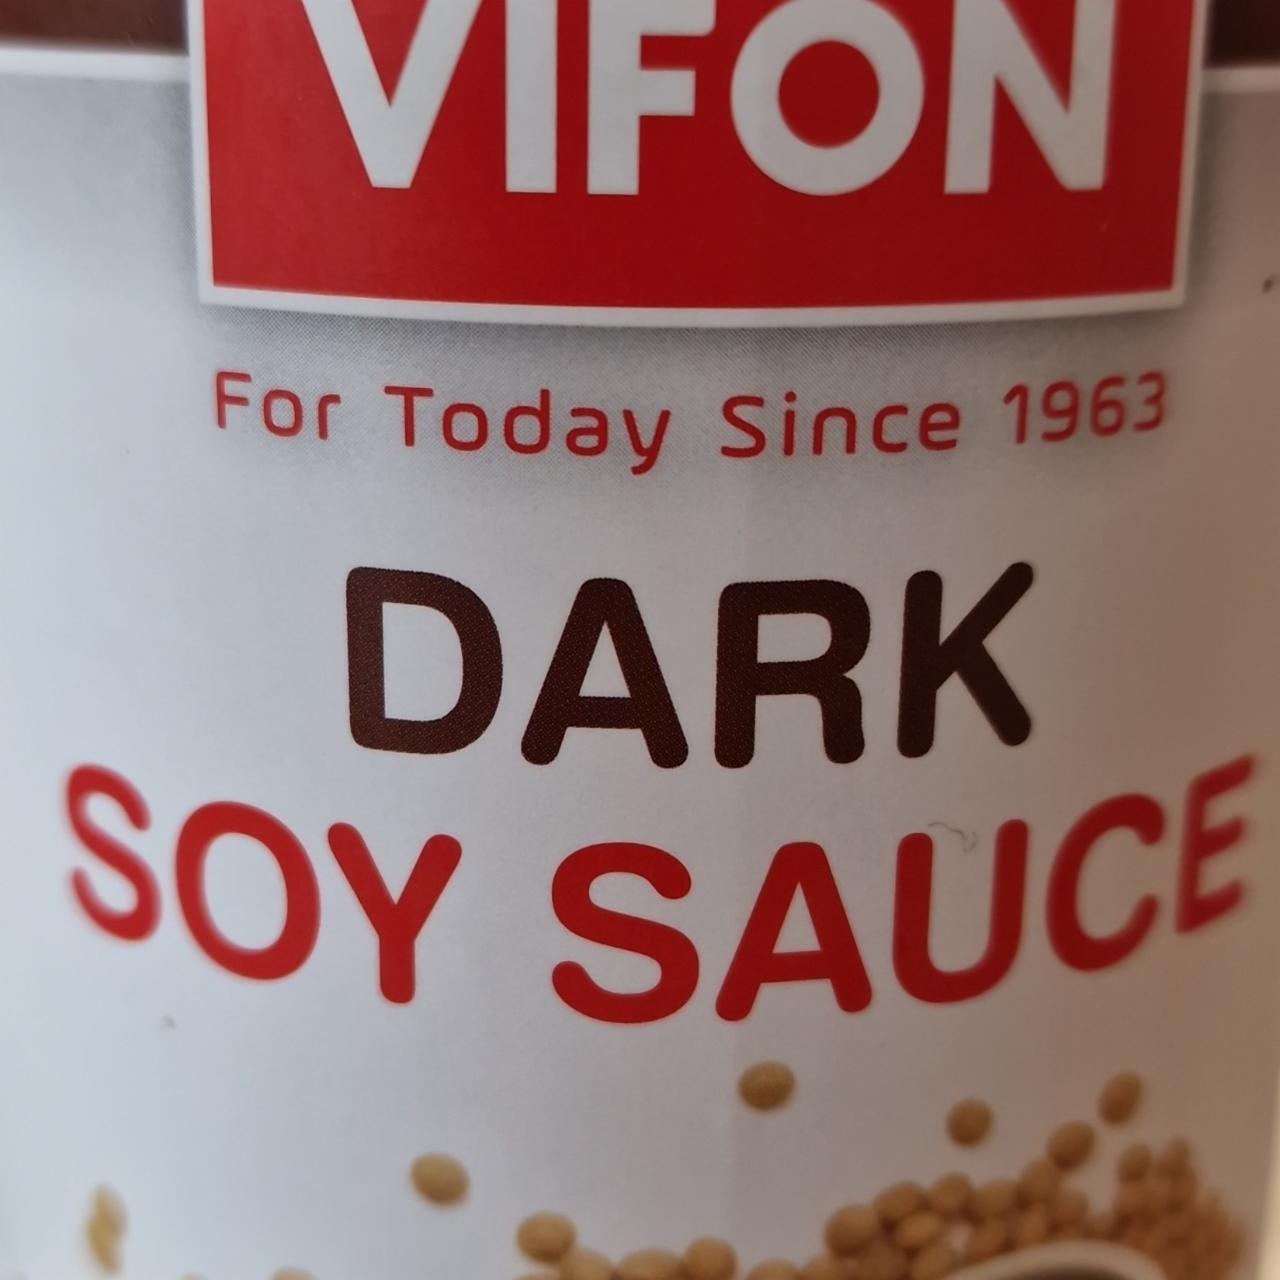 Képek - Dark soy sauce Vifon